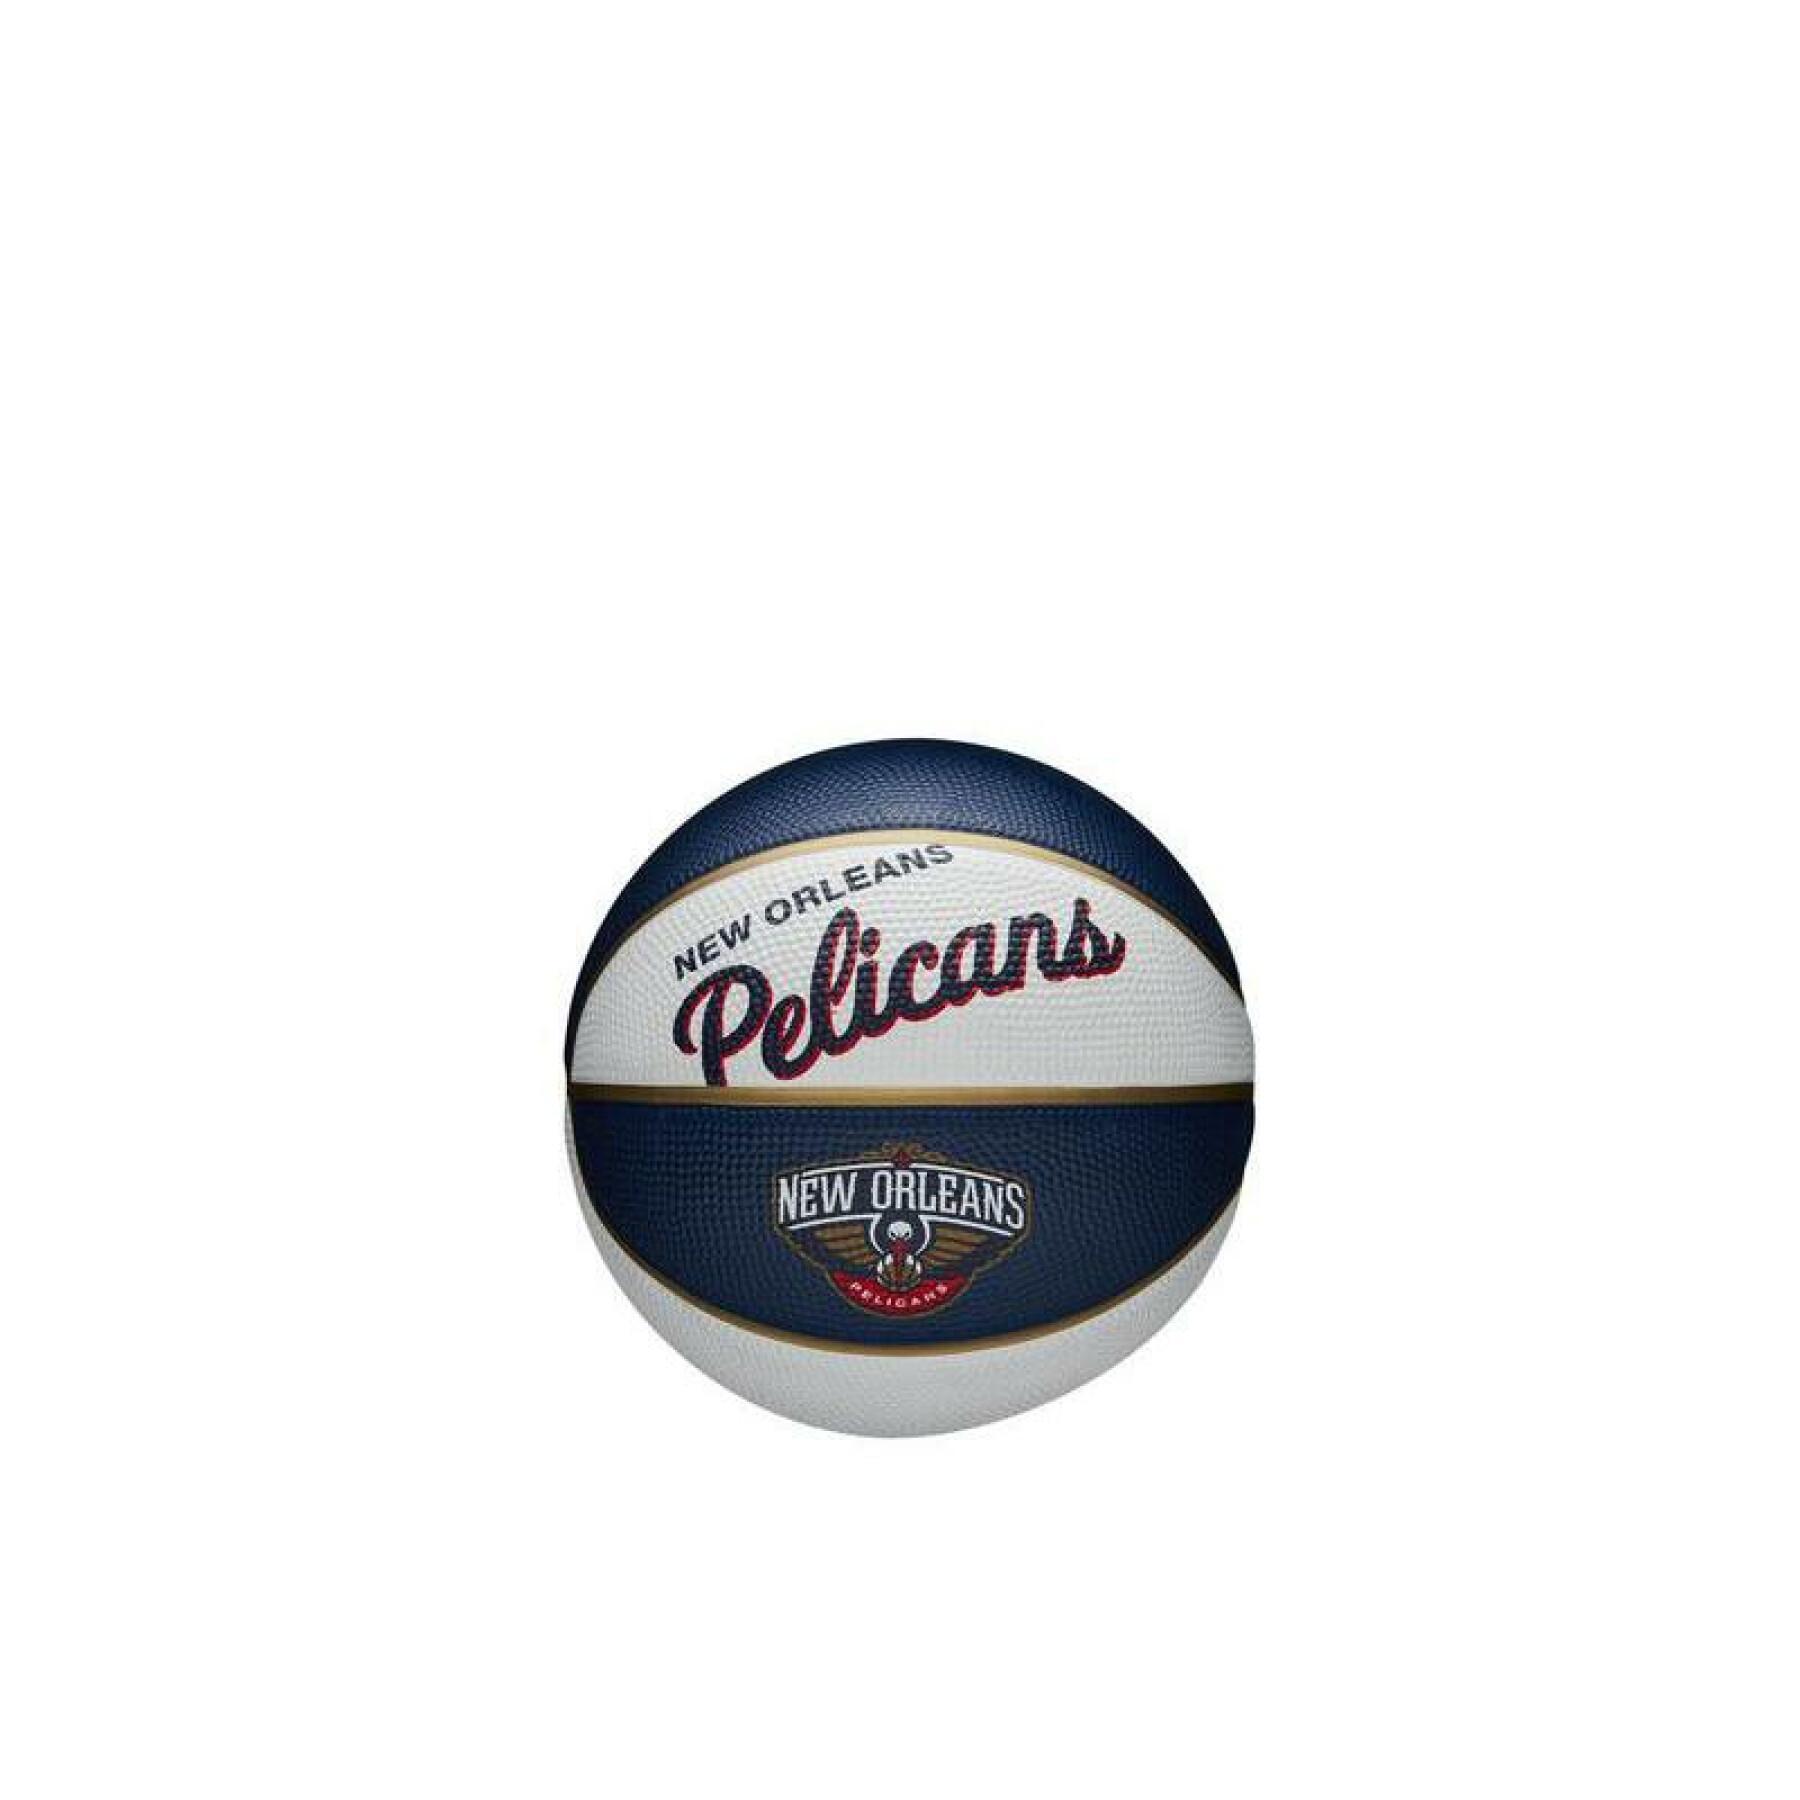 Mini palla nba retro New Orleans Pelicans